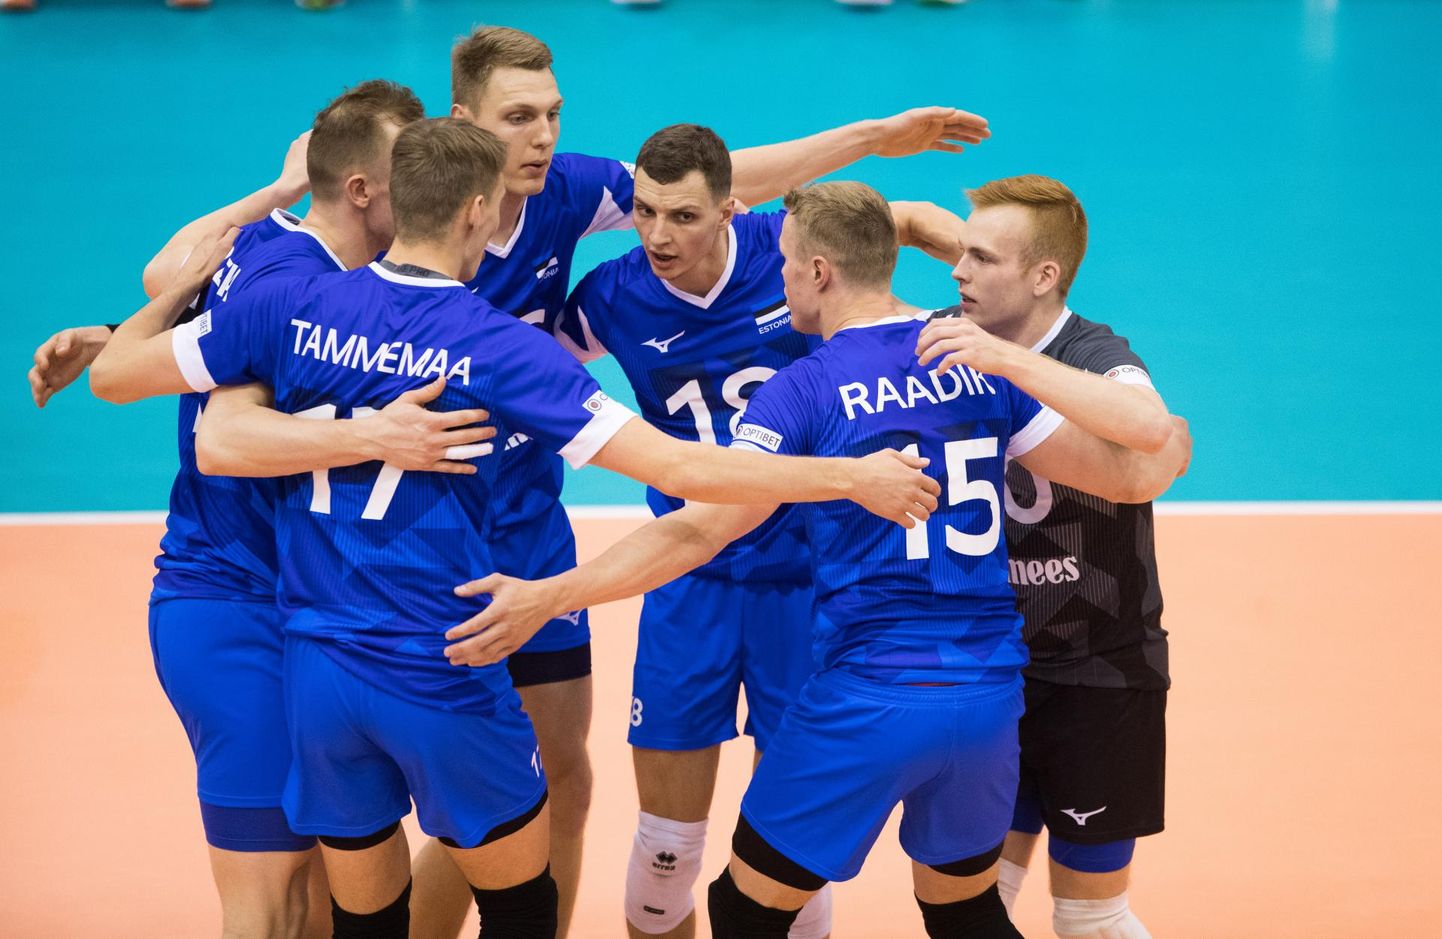 Klubivõrkpalli hooaja järel napilt puhata saanud Eesti koondise liikmetel seisab ees tihe treening- ja võistlusperiood, mis tipneb sügisel Euroopa meistrivõistluste finaalturniiriga.